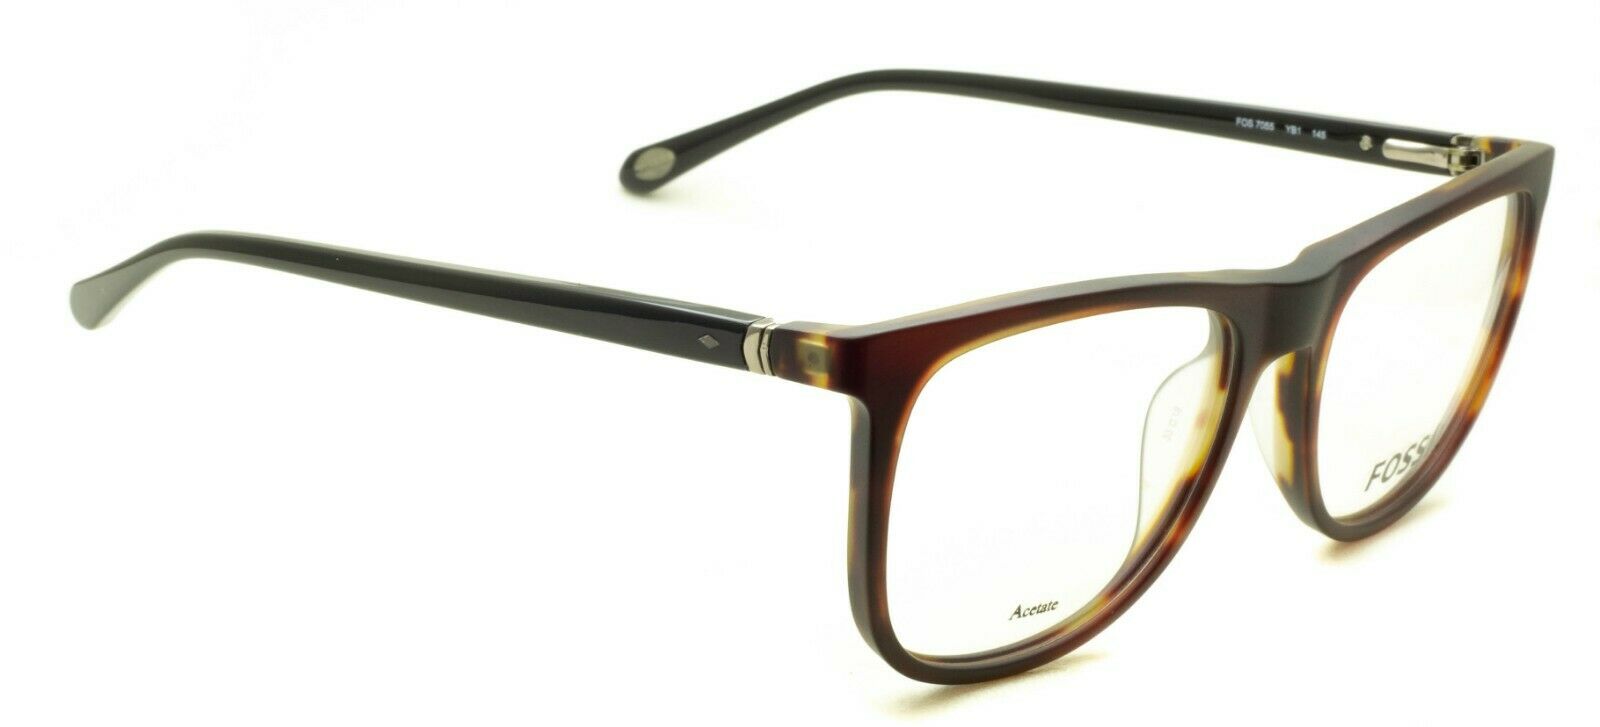 FOSSIL FOS 7055 YB1 53mm Eyewear FRAMES Glasses RX Optical Eyeglasses New BNIB